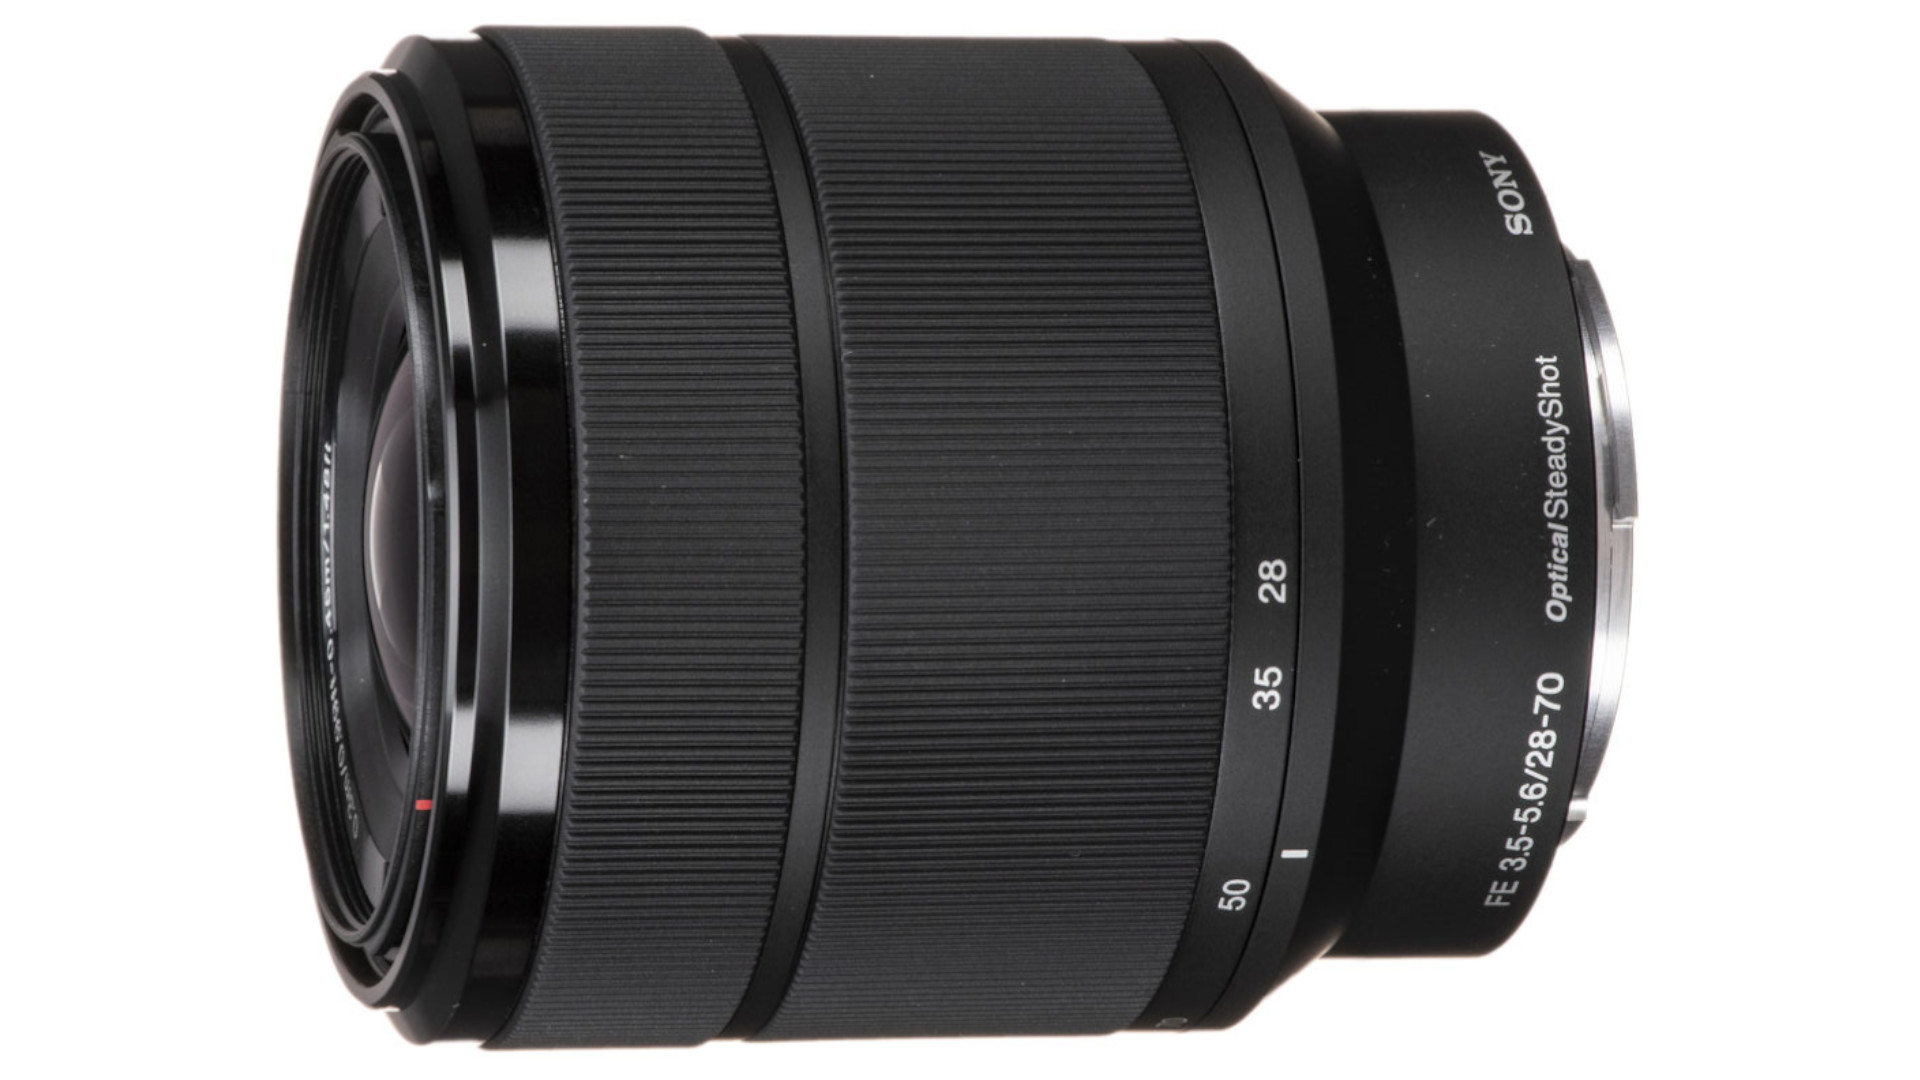 カメラ レンズ(ズーム) 人気の新作 SONY FE 28-70mm F3.5-5.6 OSS フィルター3個 sushitai.com.mx